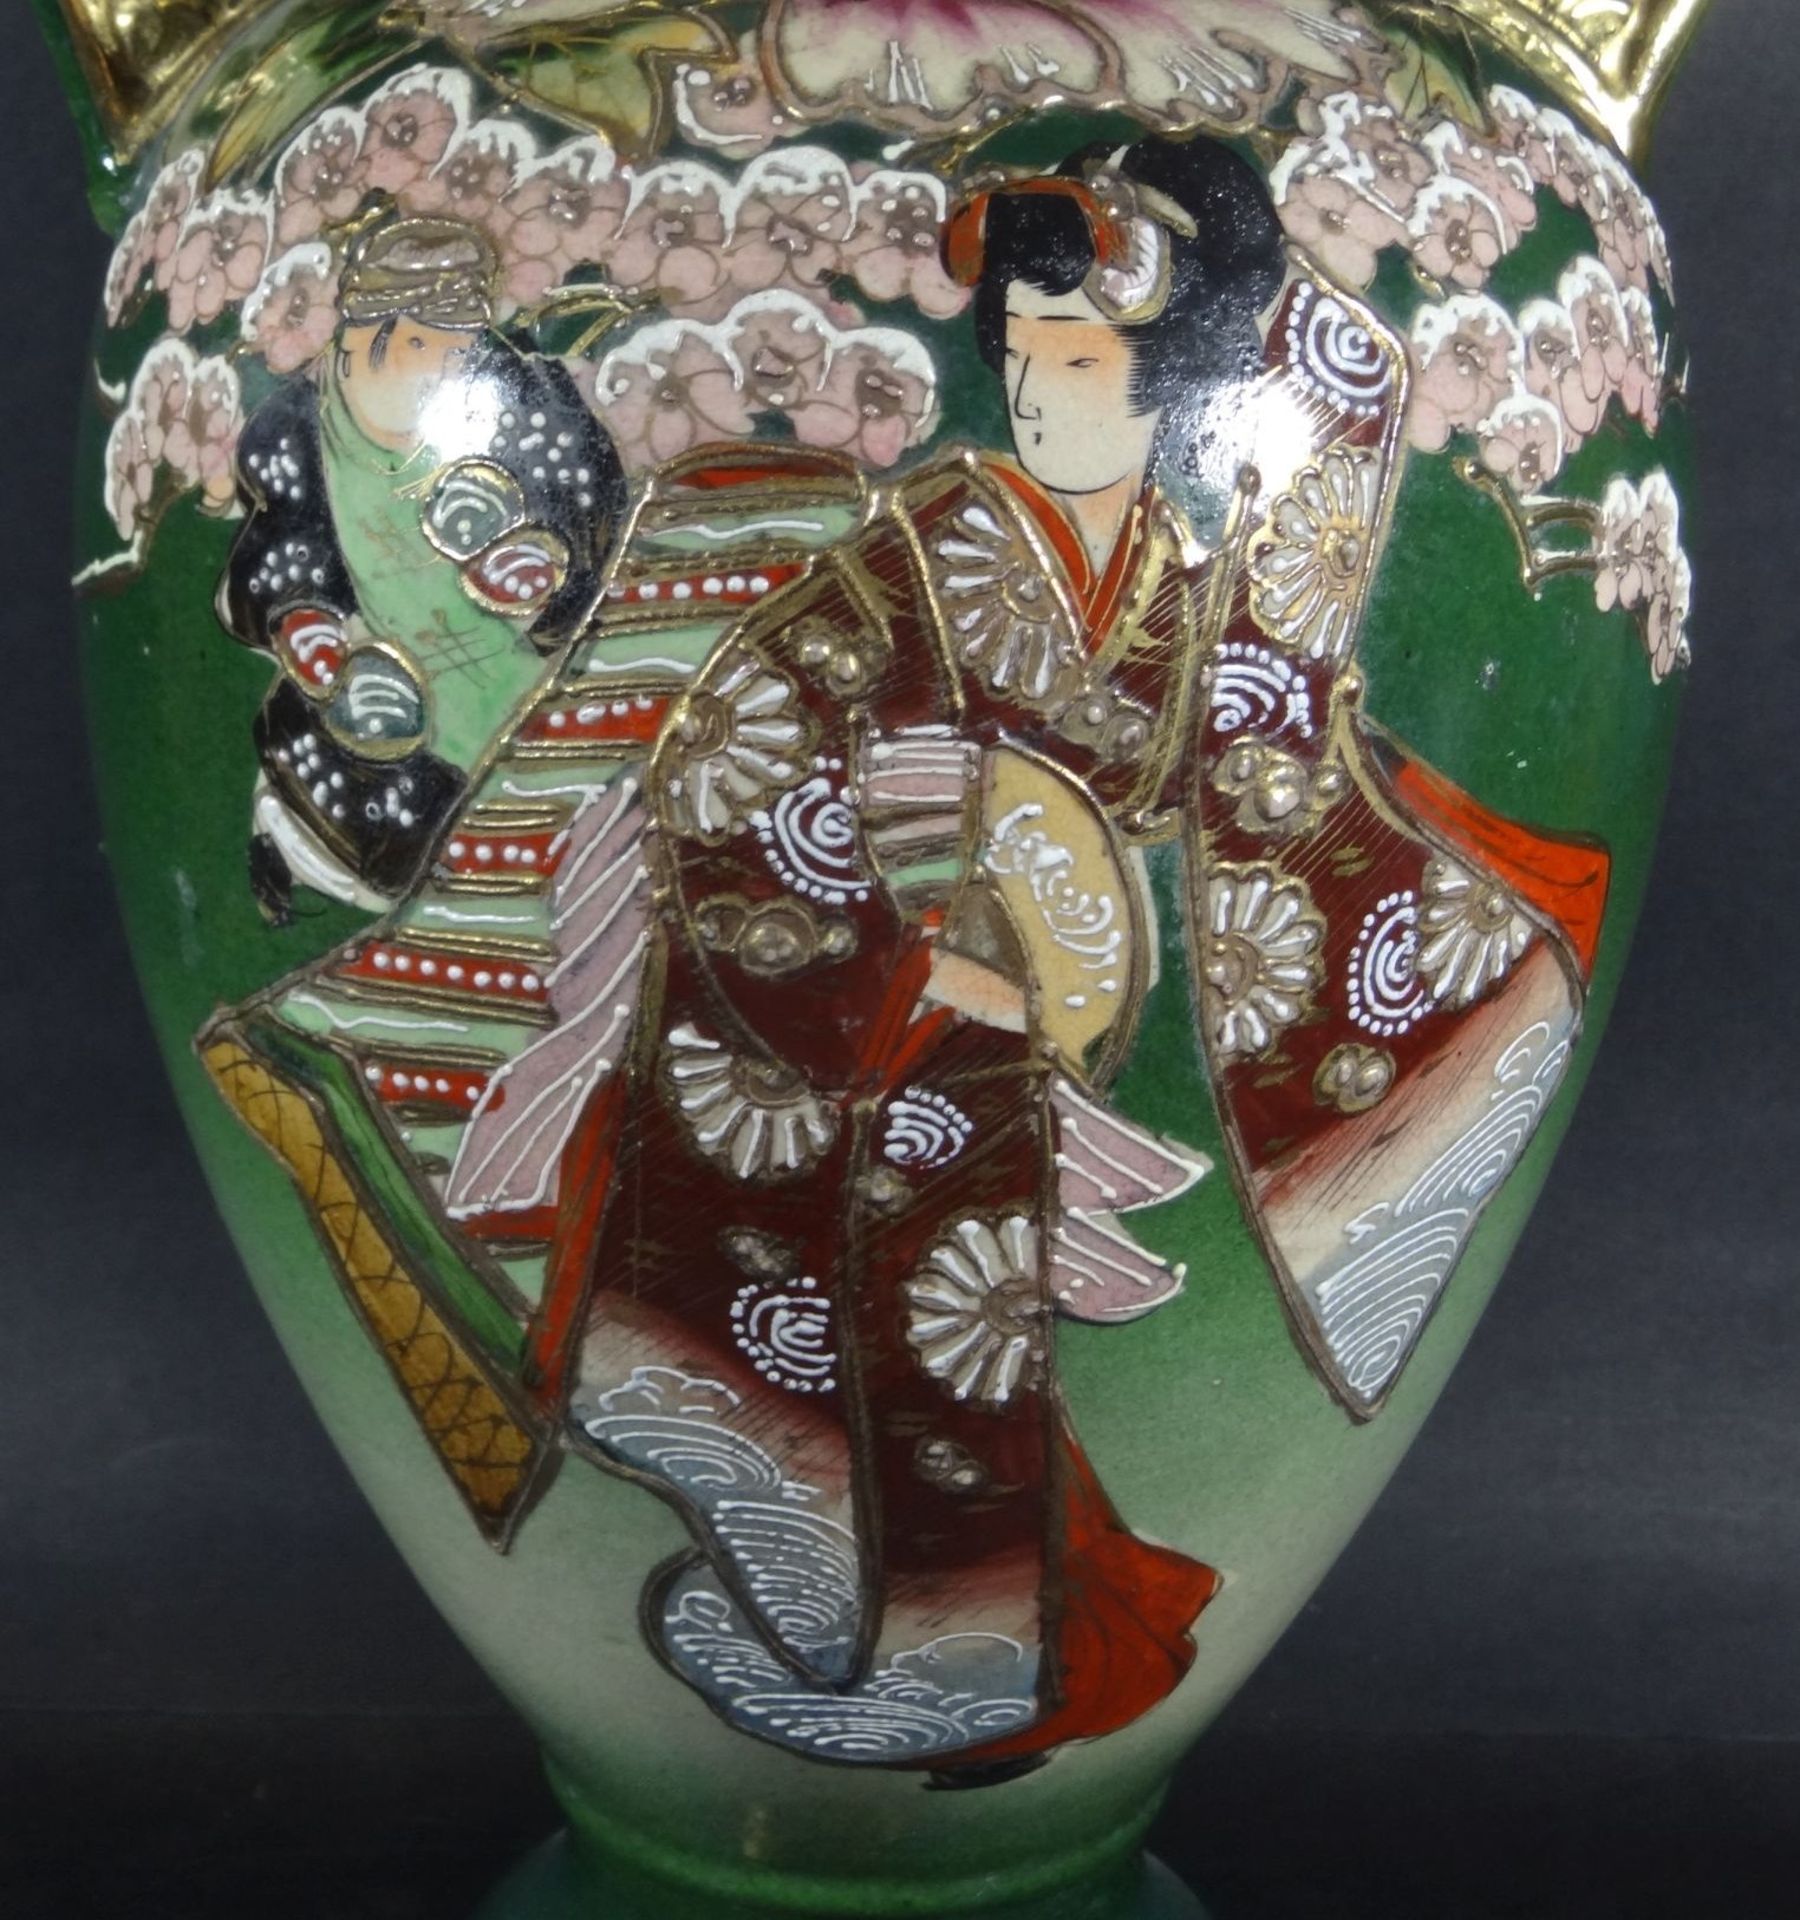 grosse China-Vase, Emaillemalerei, wohl um 1920?, H-45 cm, im Boden Schriftzeichen,- - -22.61 % - Bild 5 aus 7